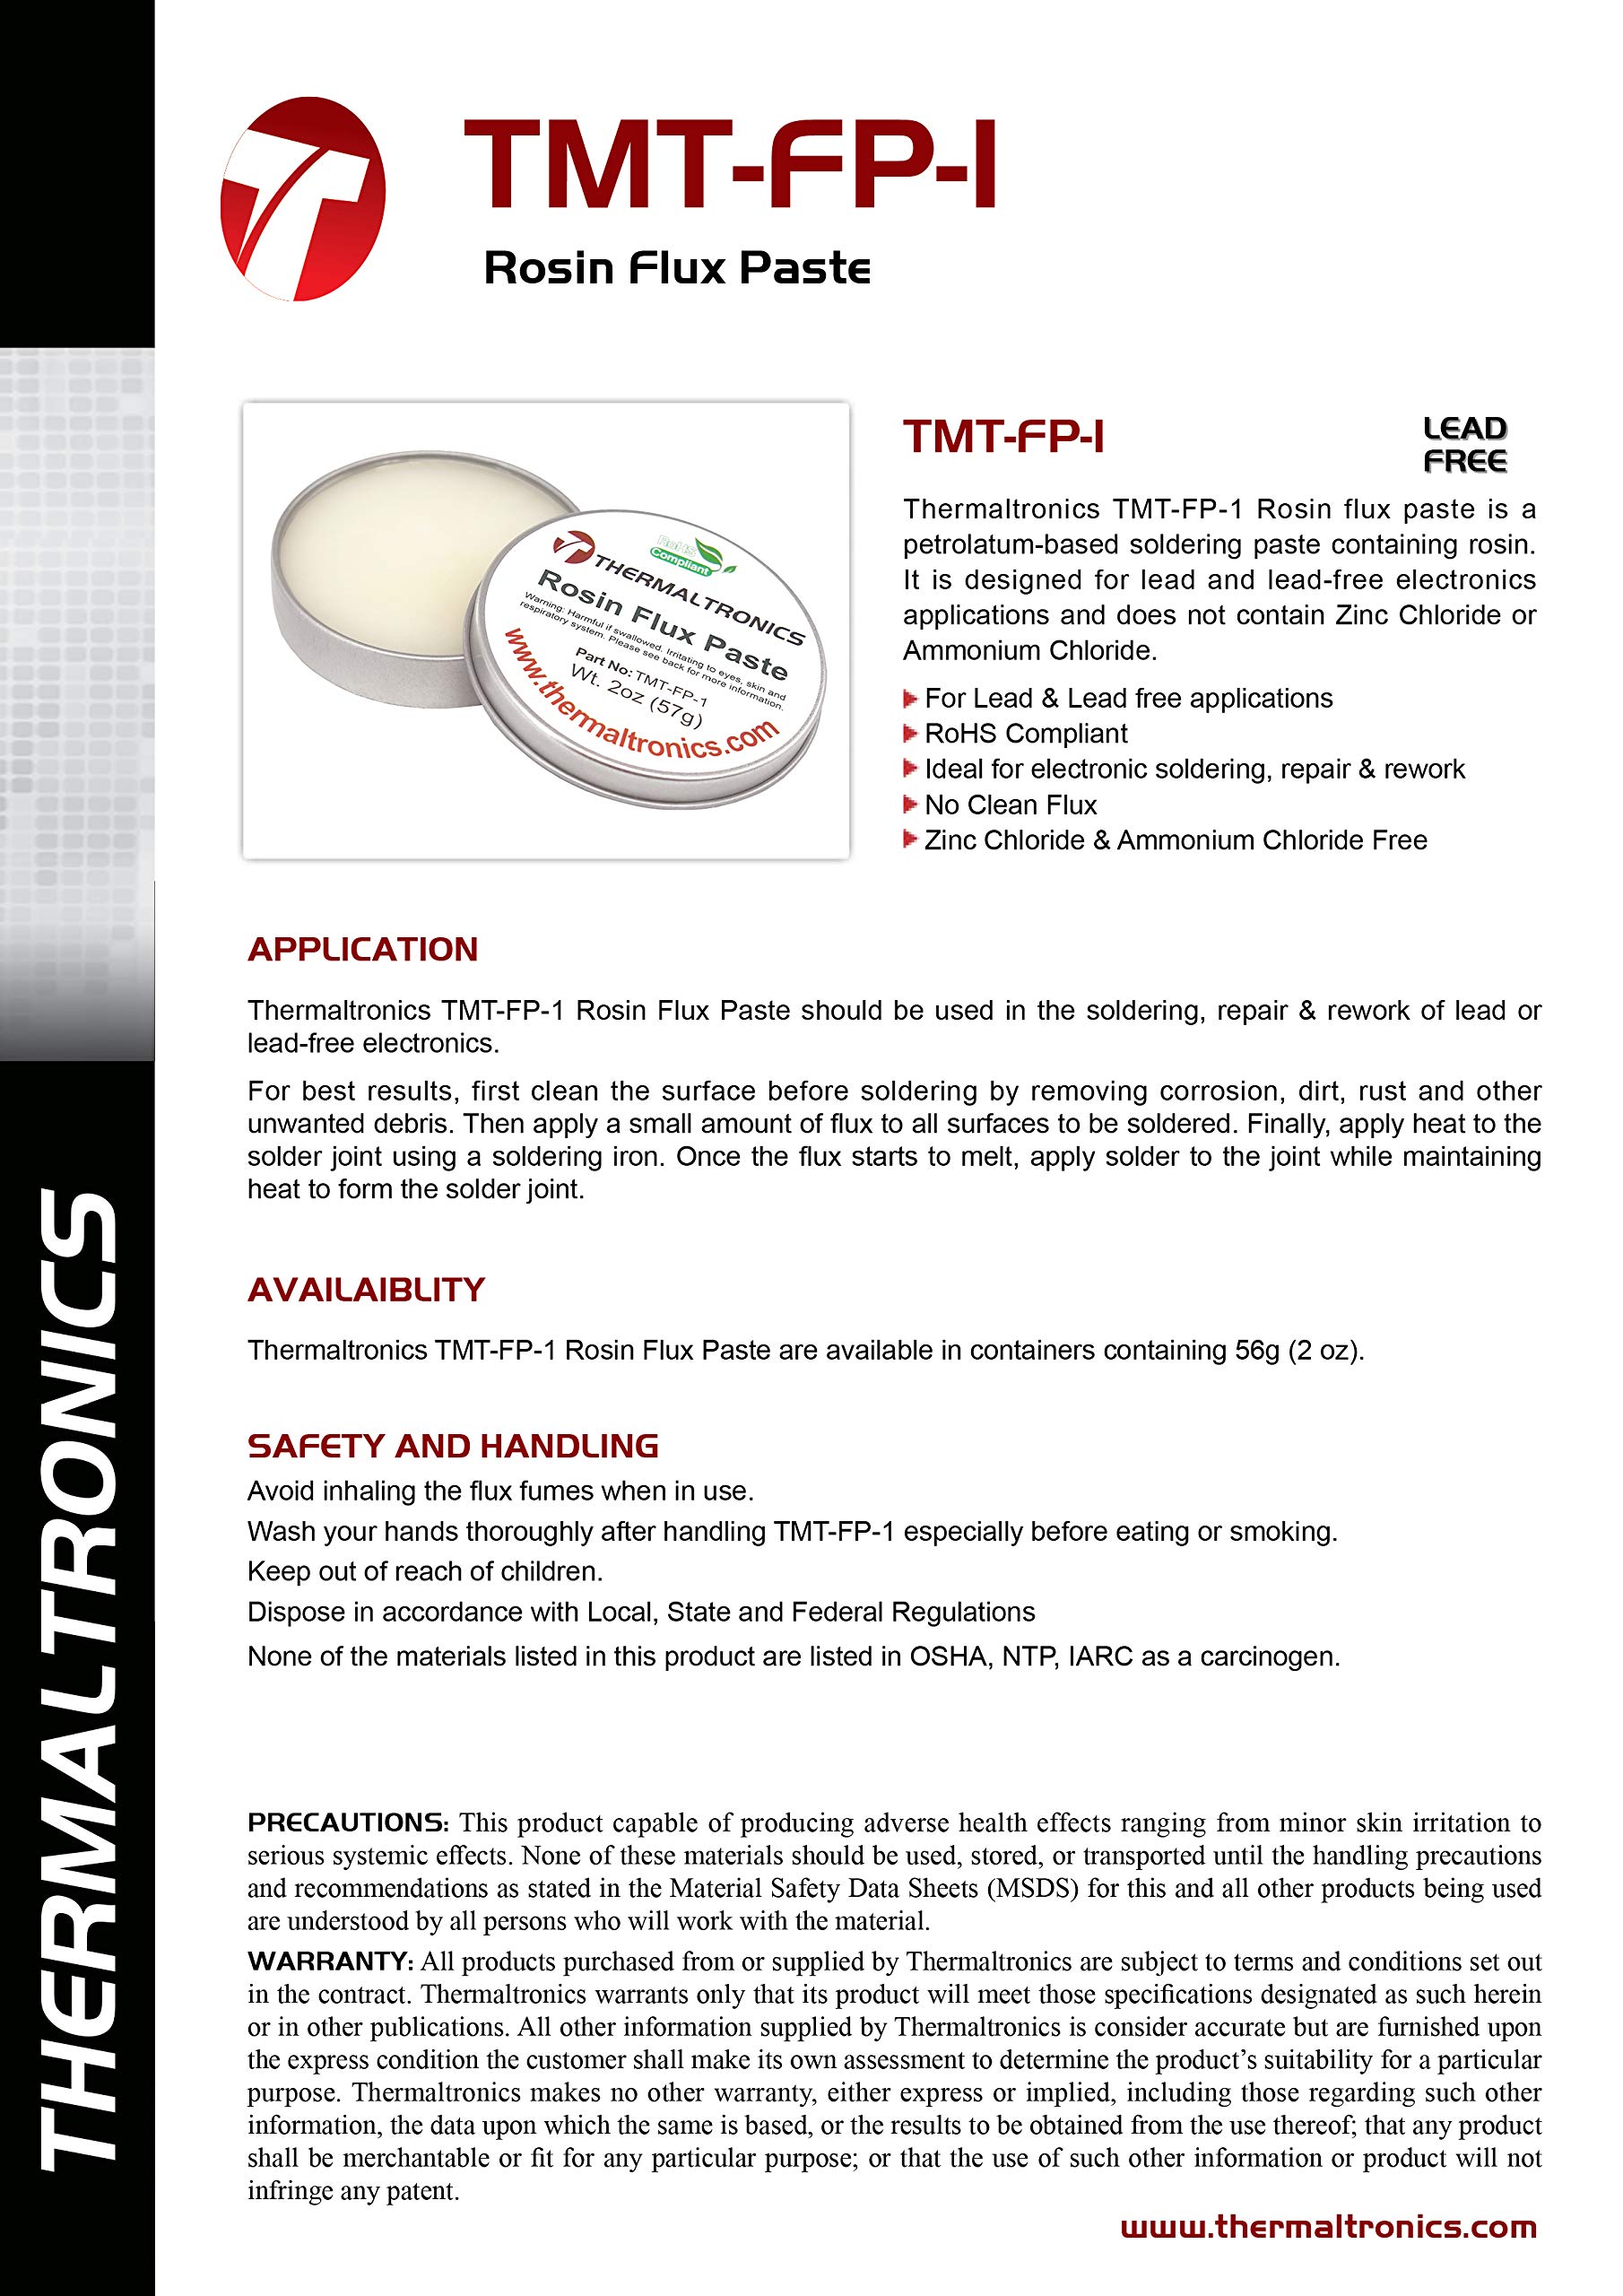 Thermaltronics TMT-FP-1 Rosin Flux Paste, 2.0 oz (57 g)